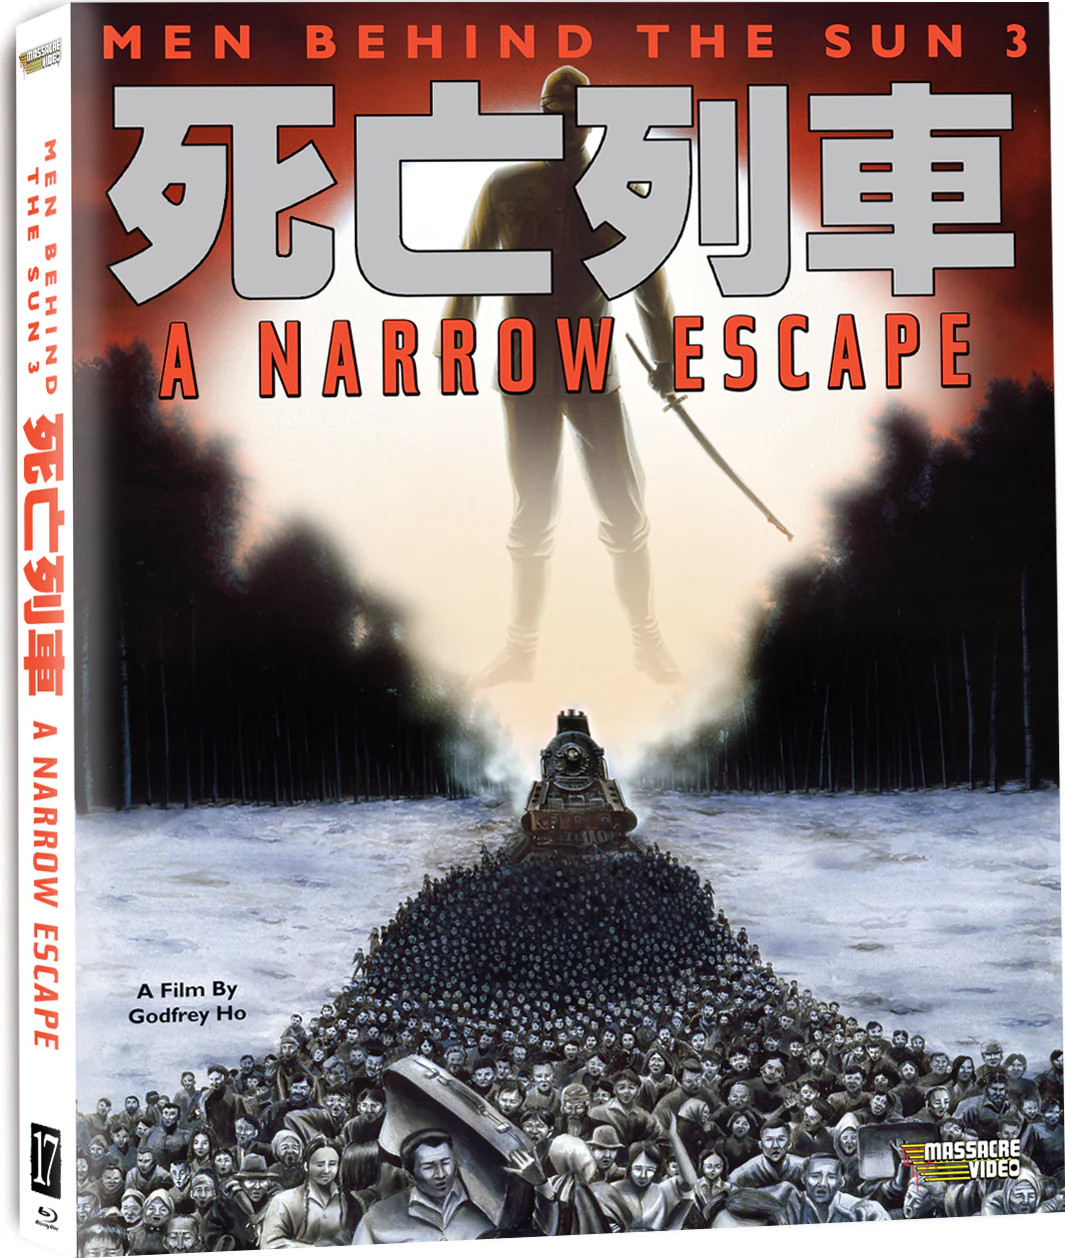 Men Behind the Sun 3: Narrow Escape